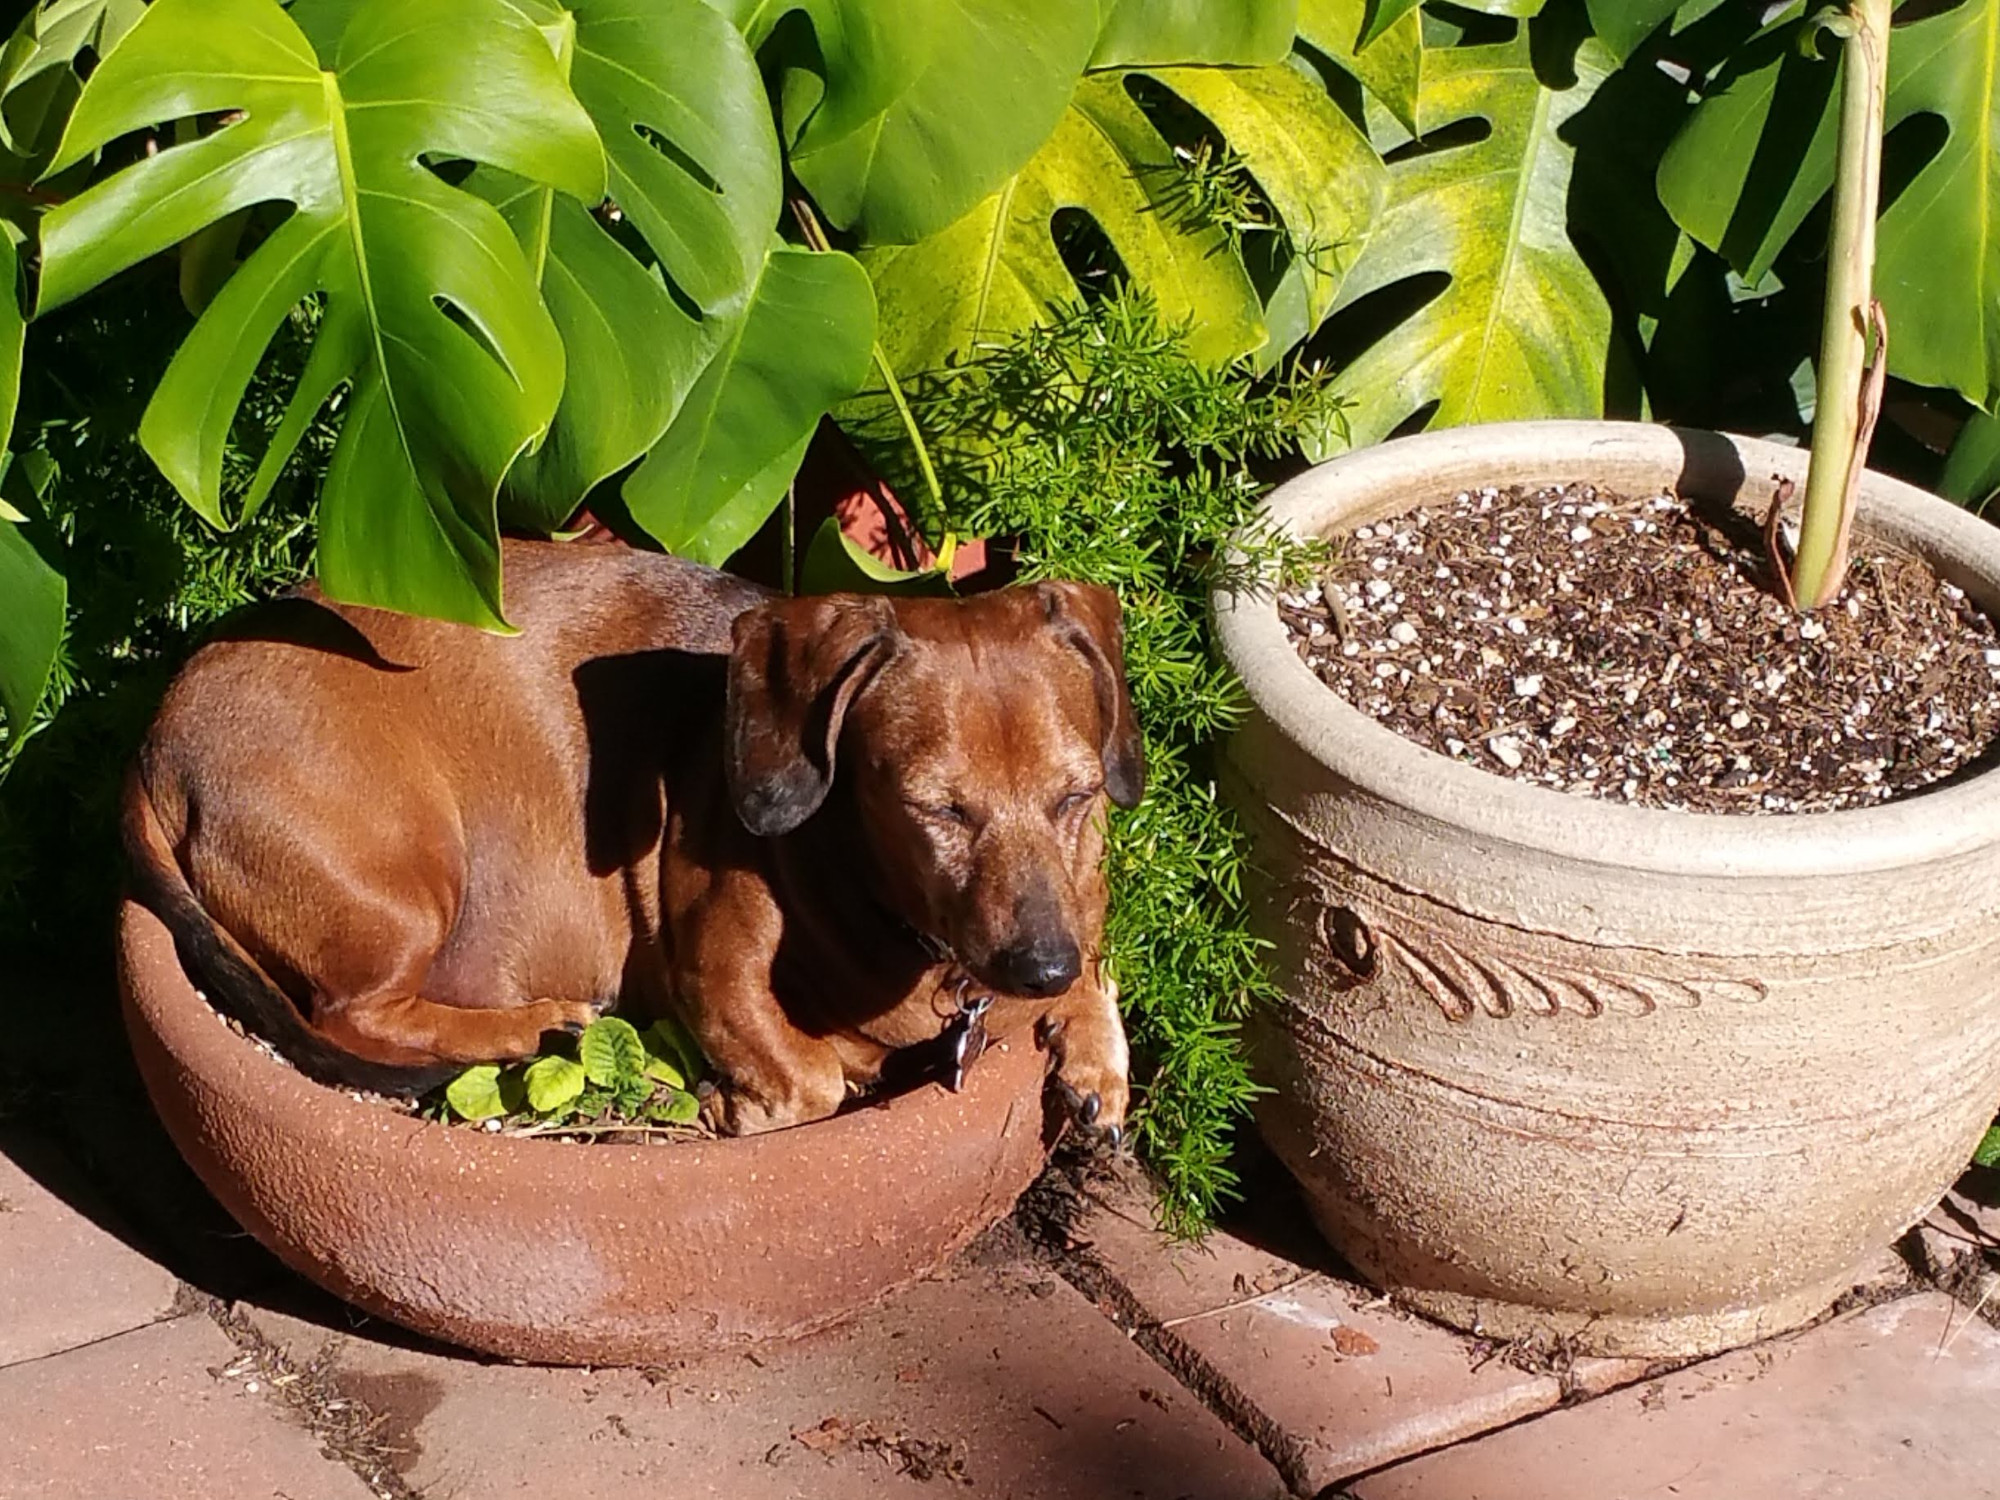 A dachshund sleeping in a plant pot